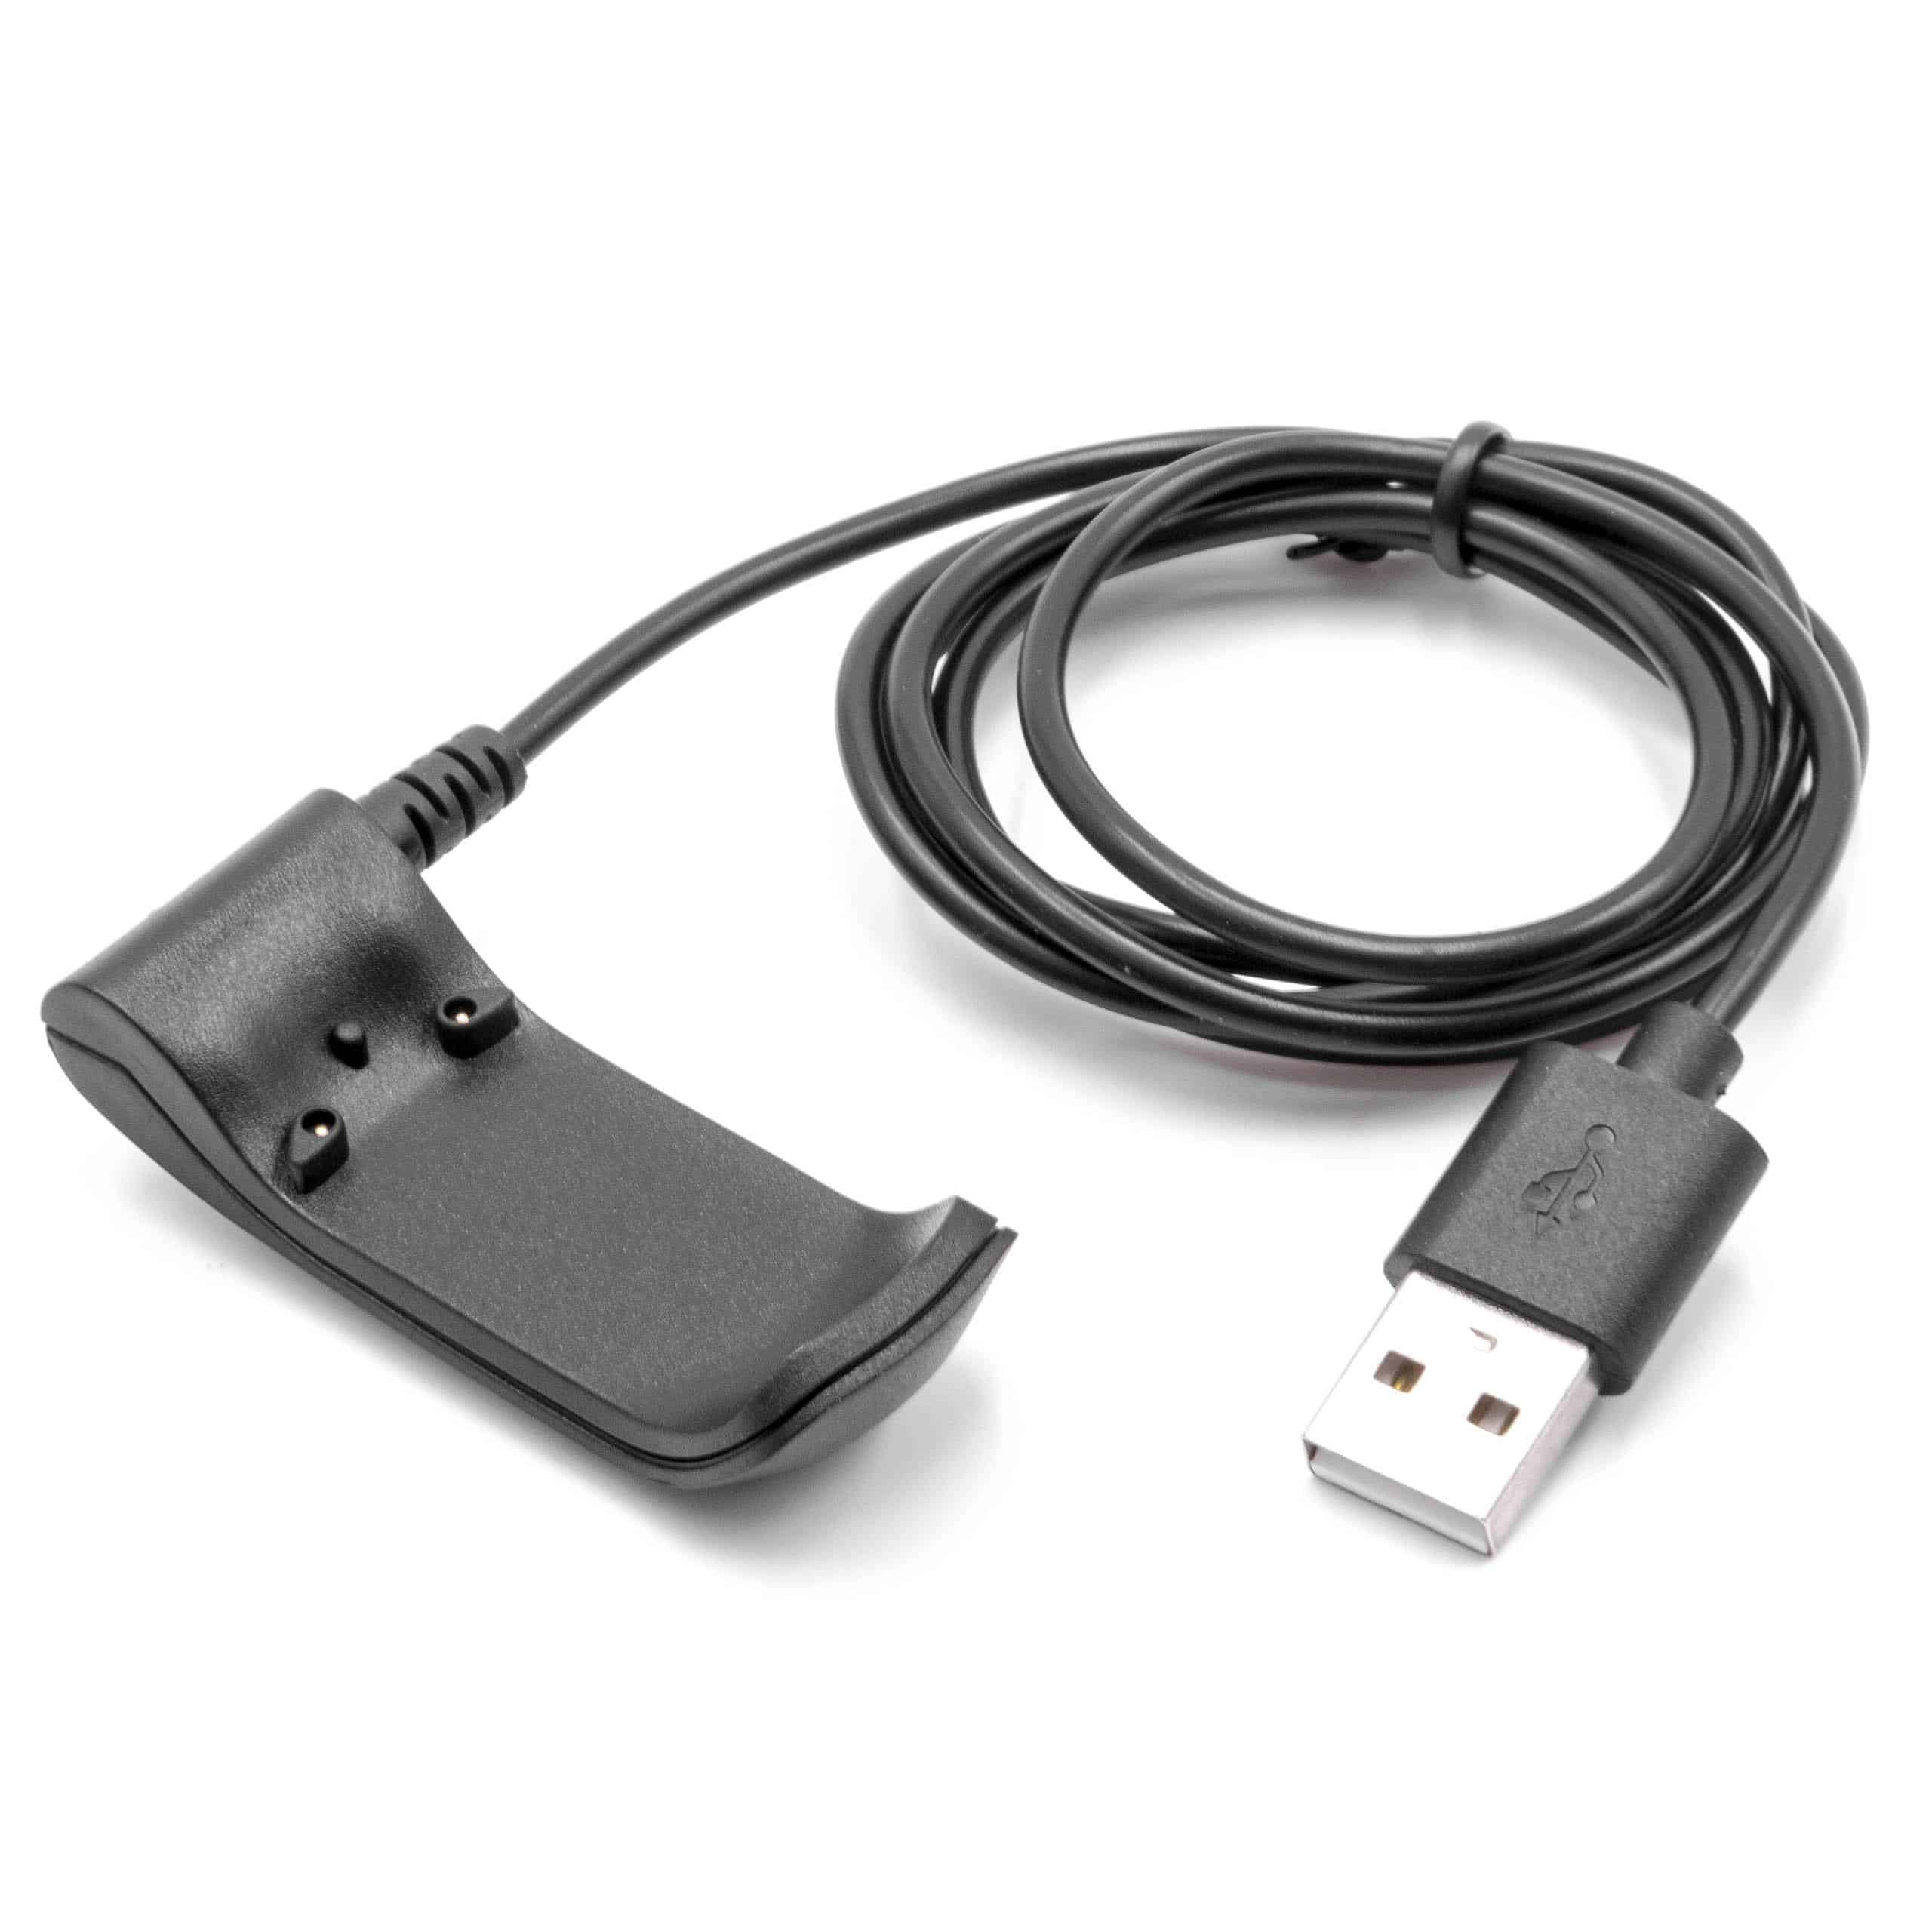 Cable de carga USB para smartwatch Garmin Forerunner 610 - negro 100 cm